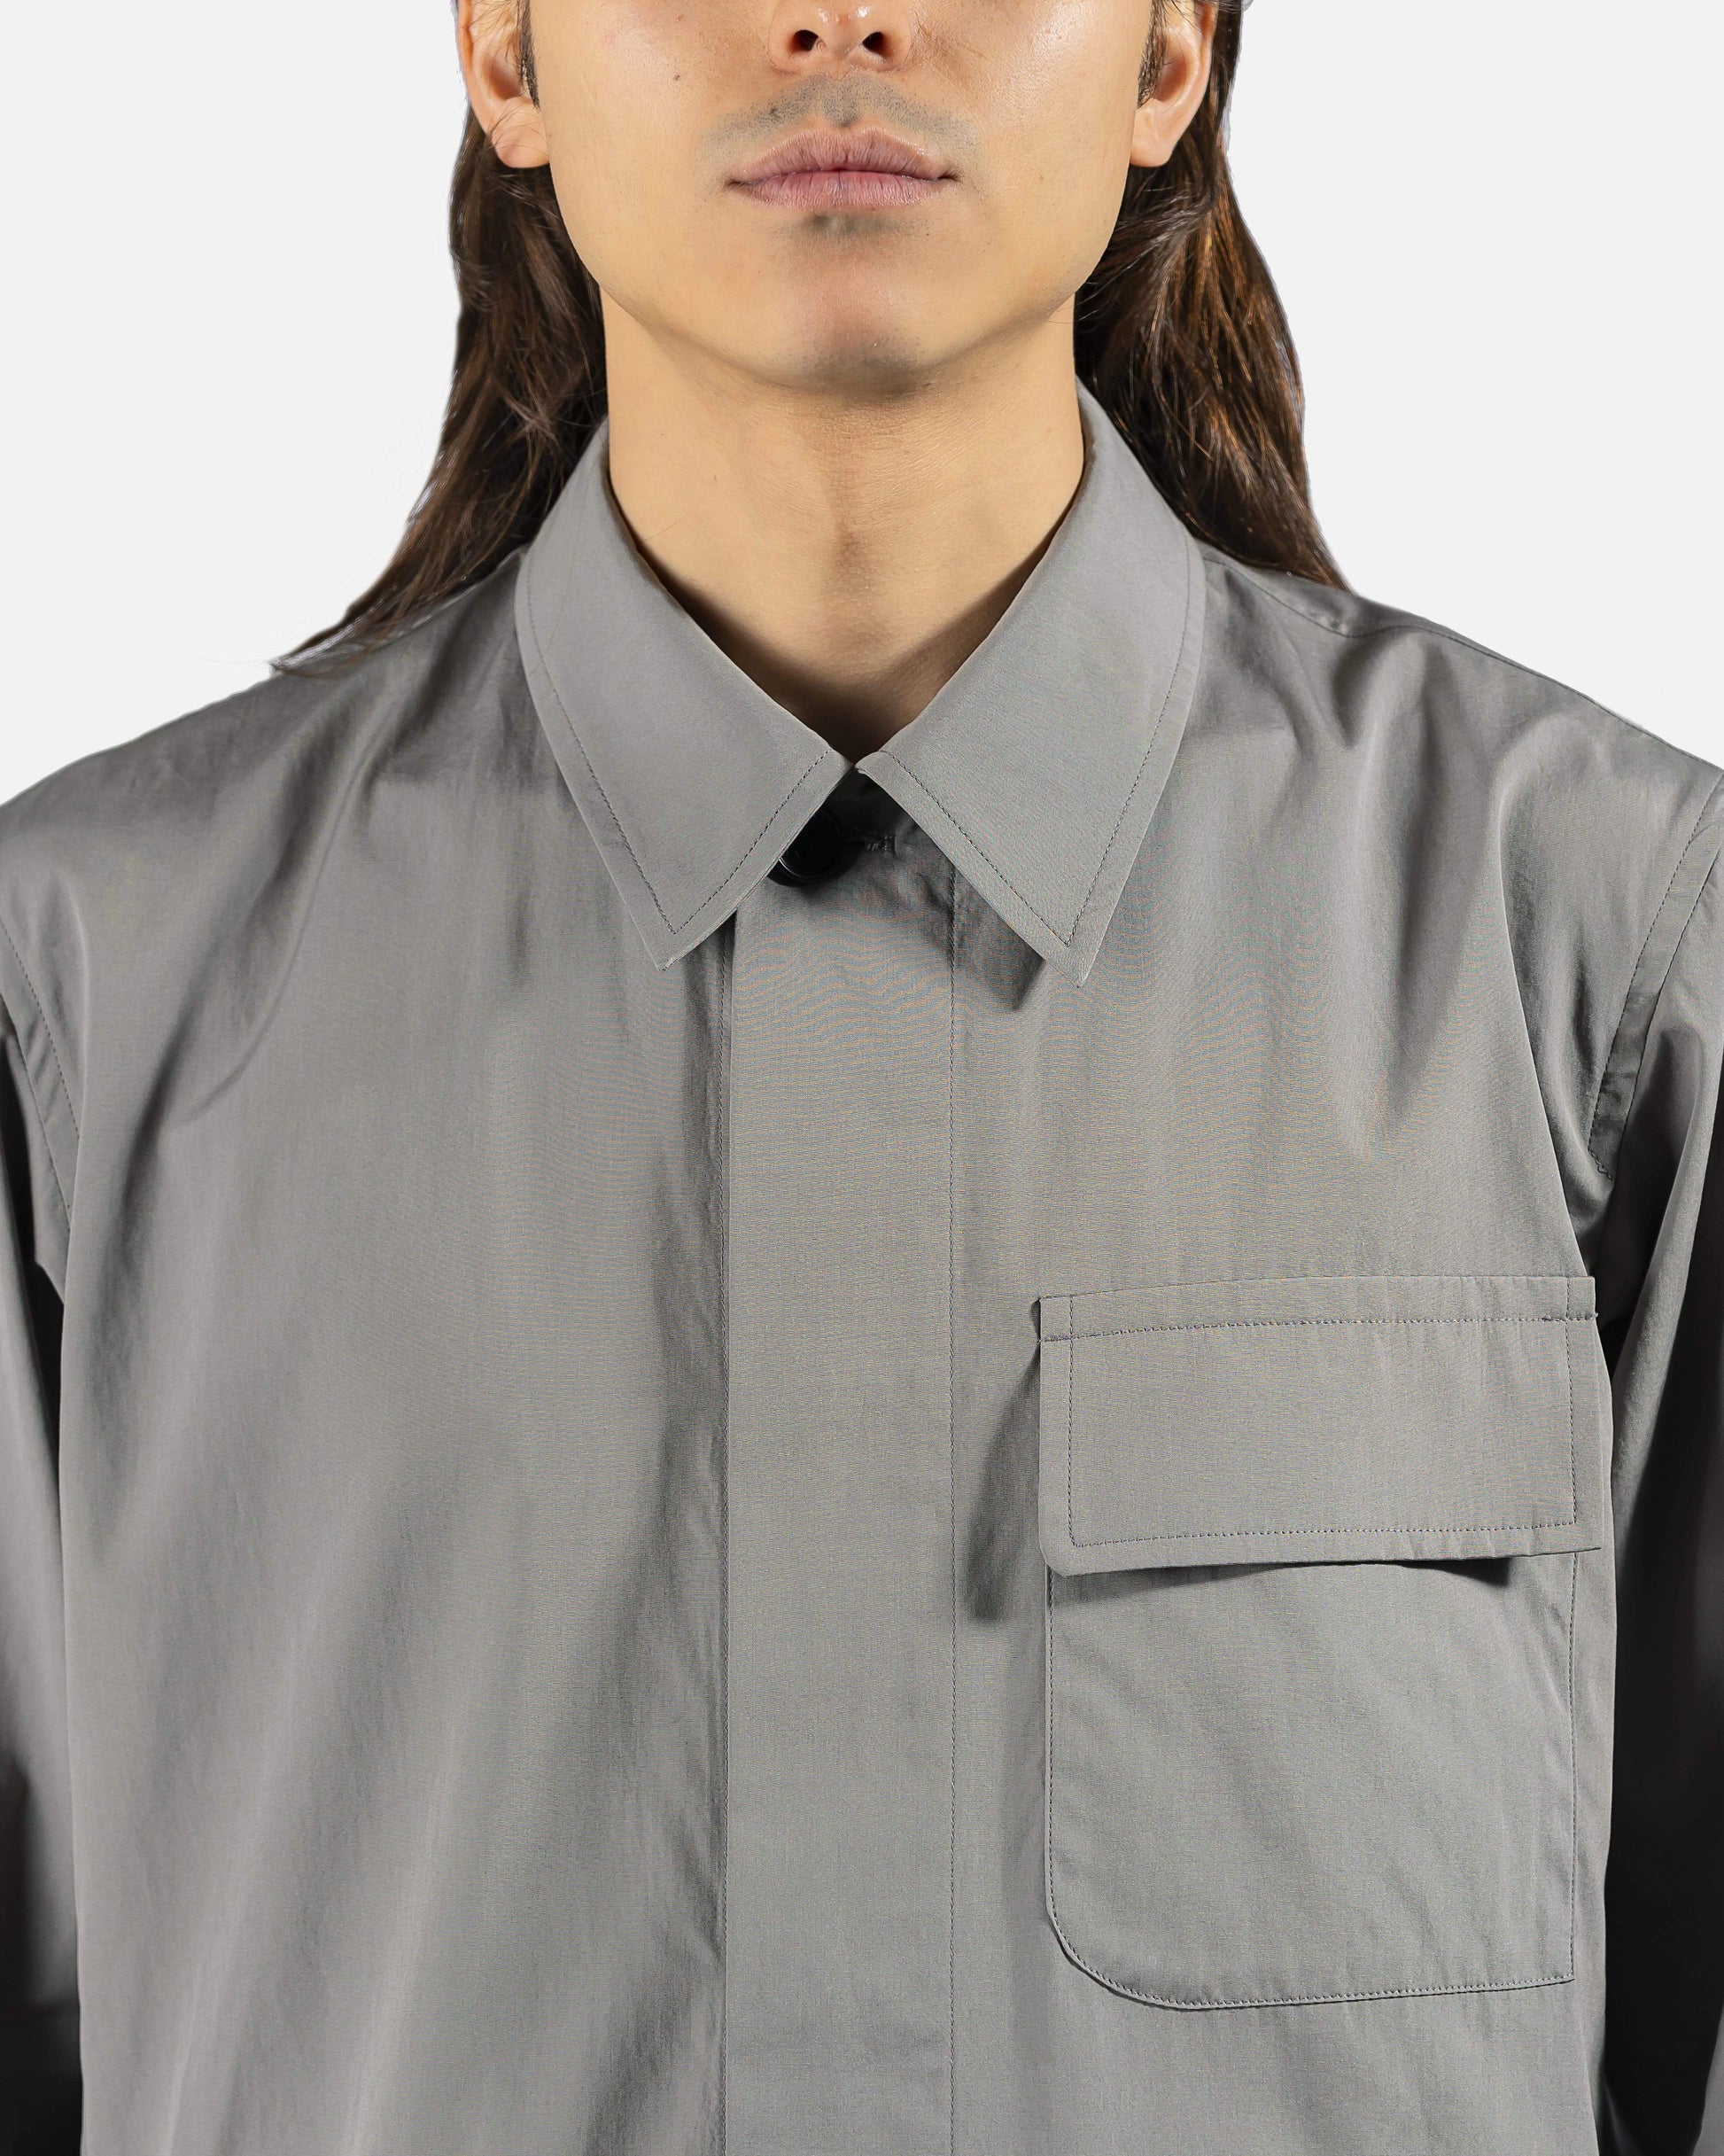 Dries Van Noten Men's Shirts Cadin Shirt in Grey